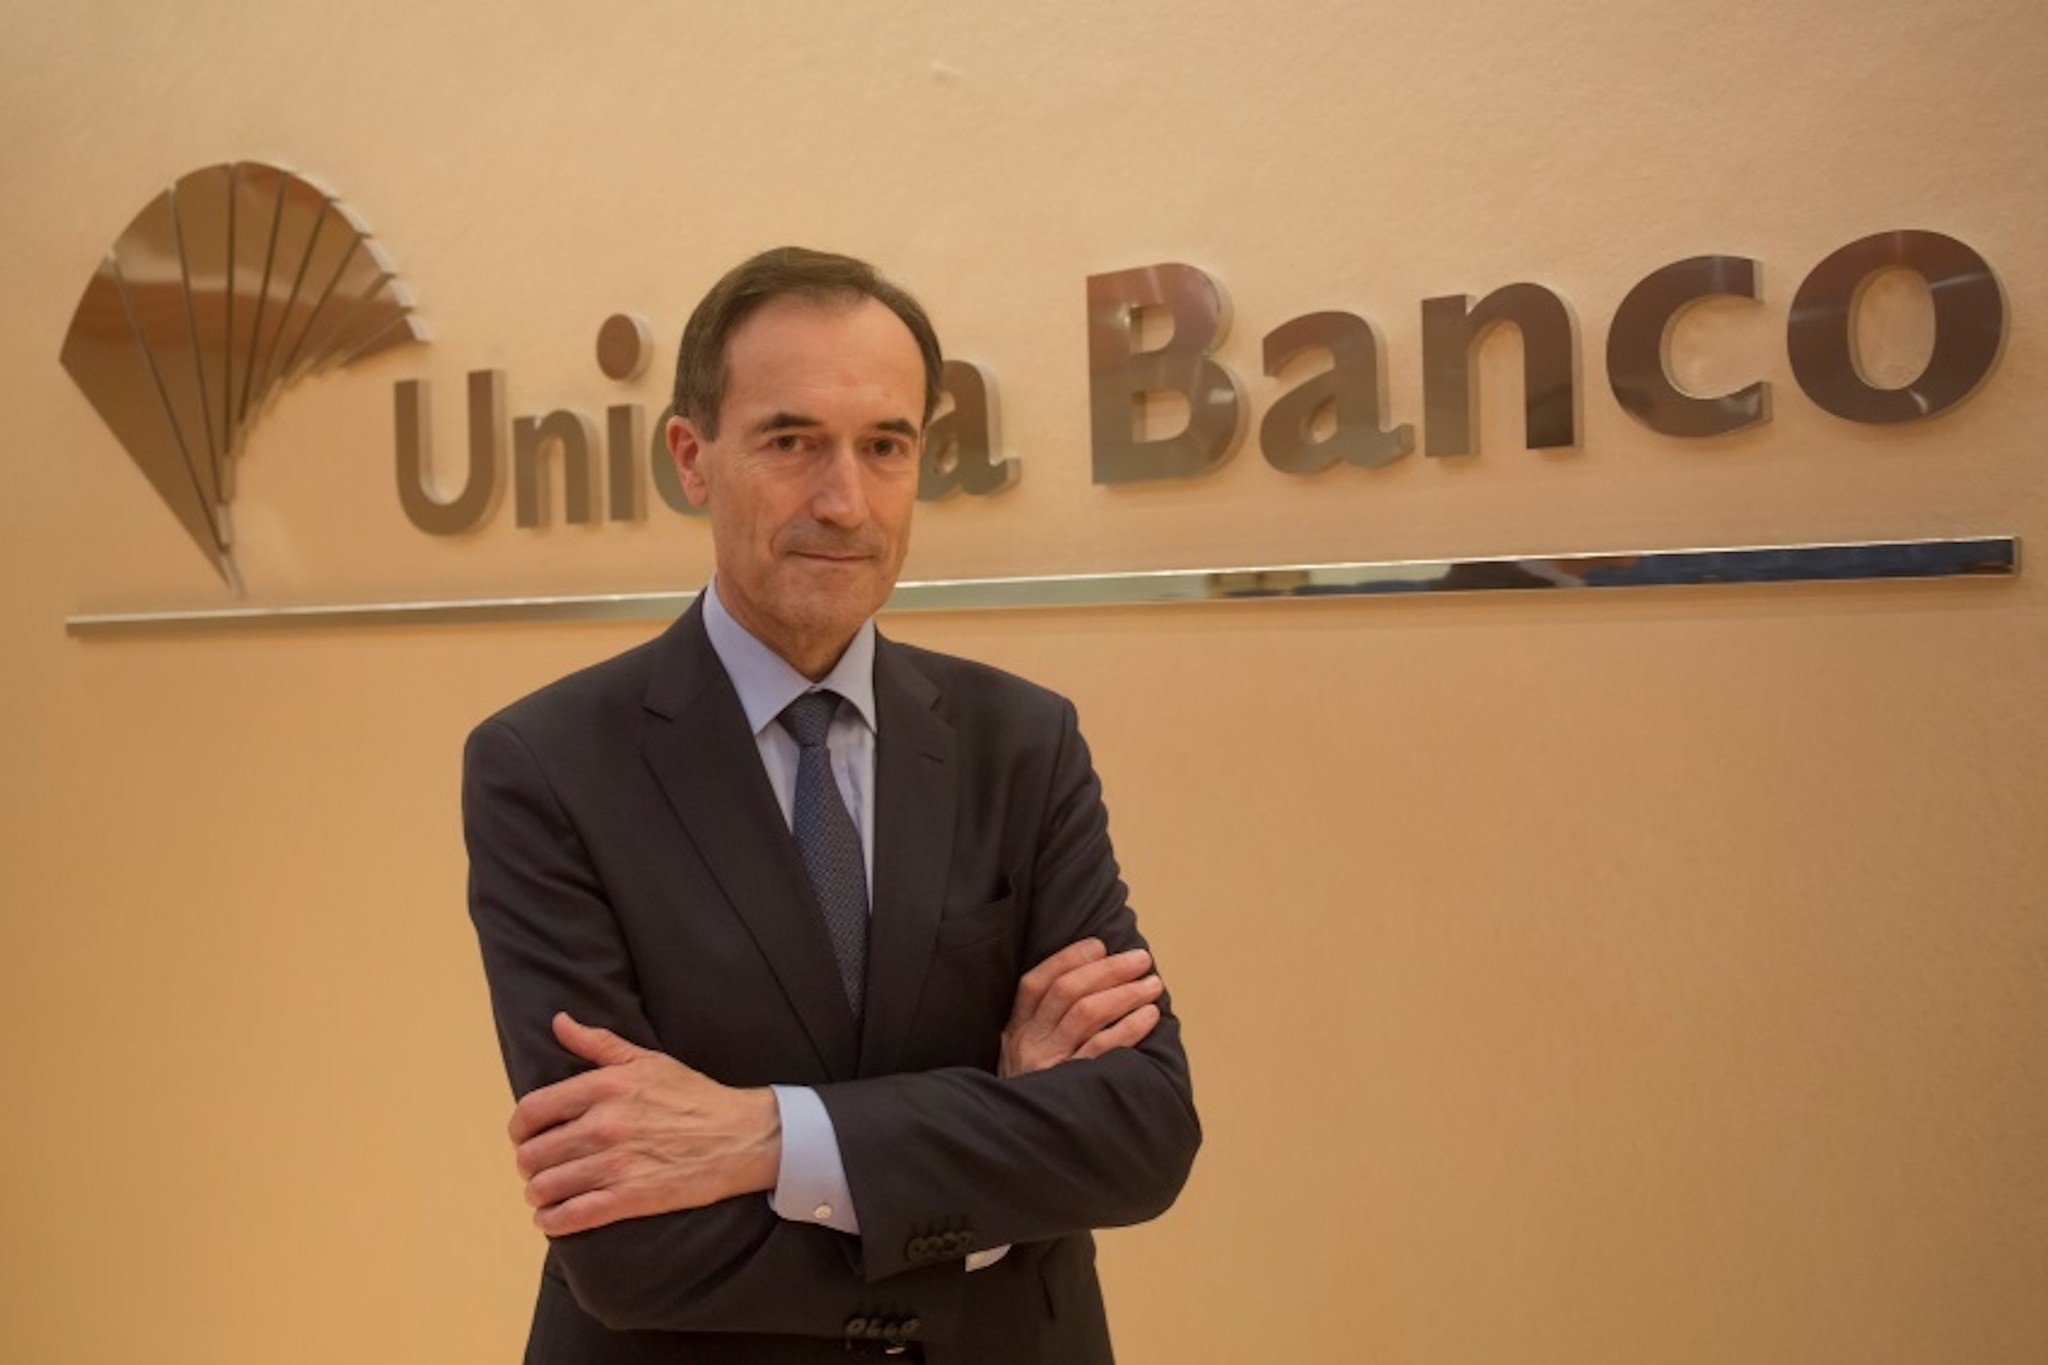 Manuel Menéndez s'acomiada d'Unicaja després de menys de dos anys en el càrrec